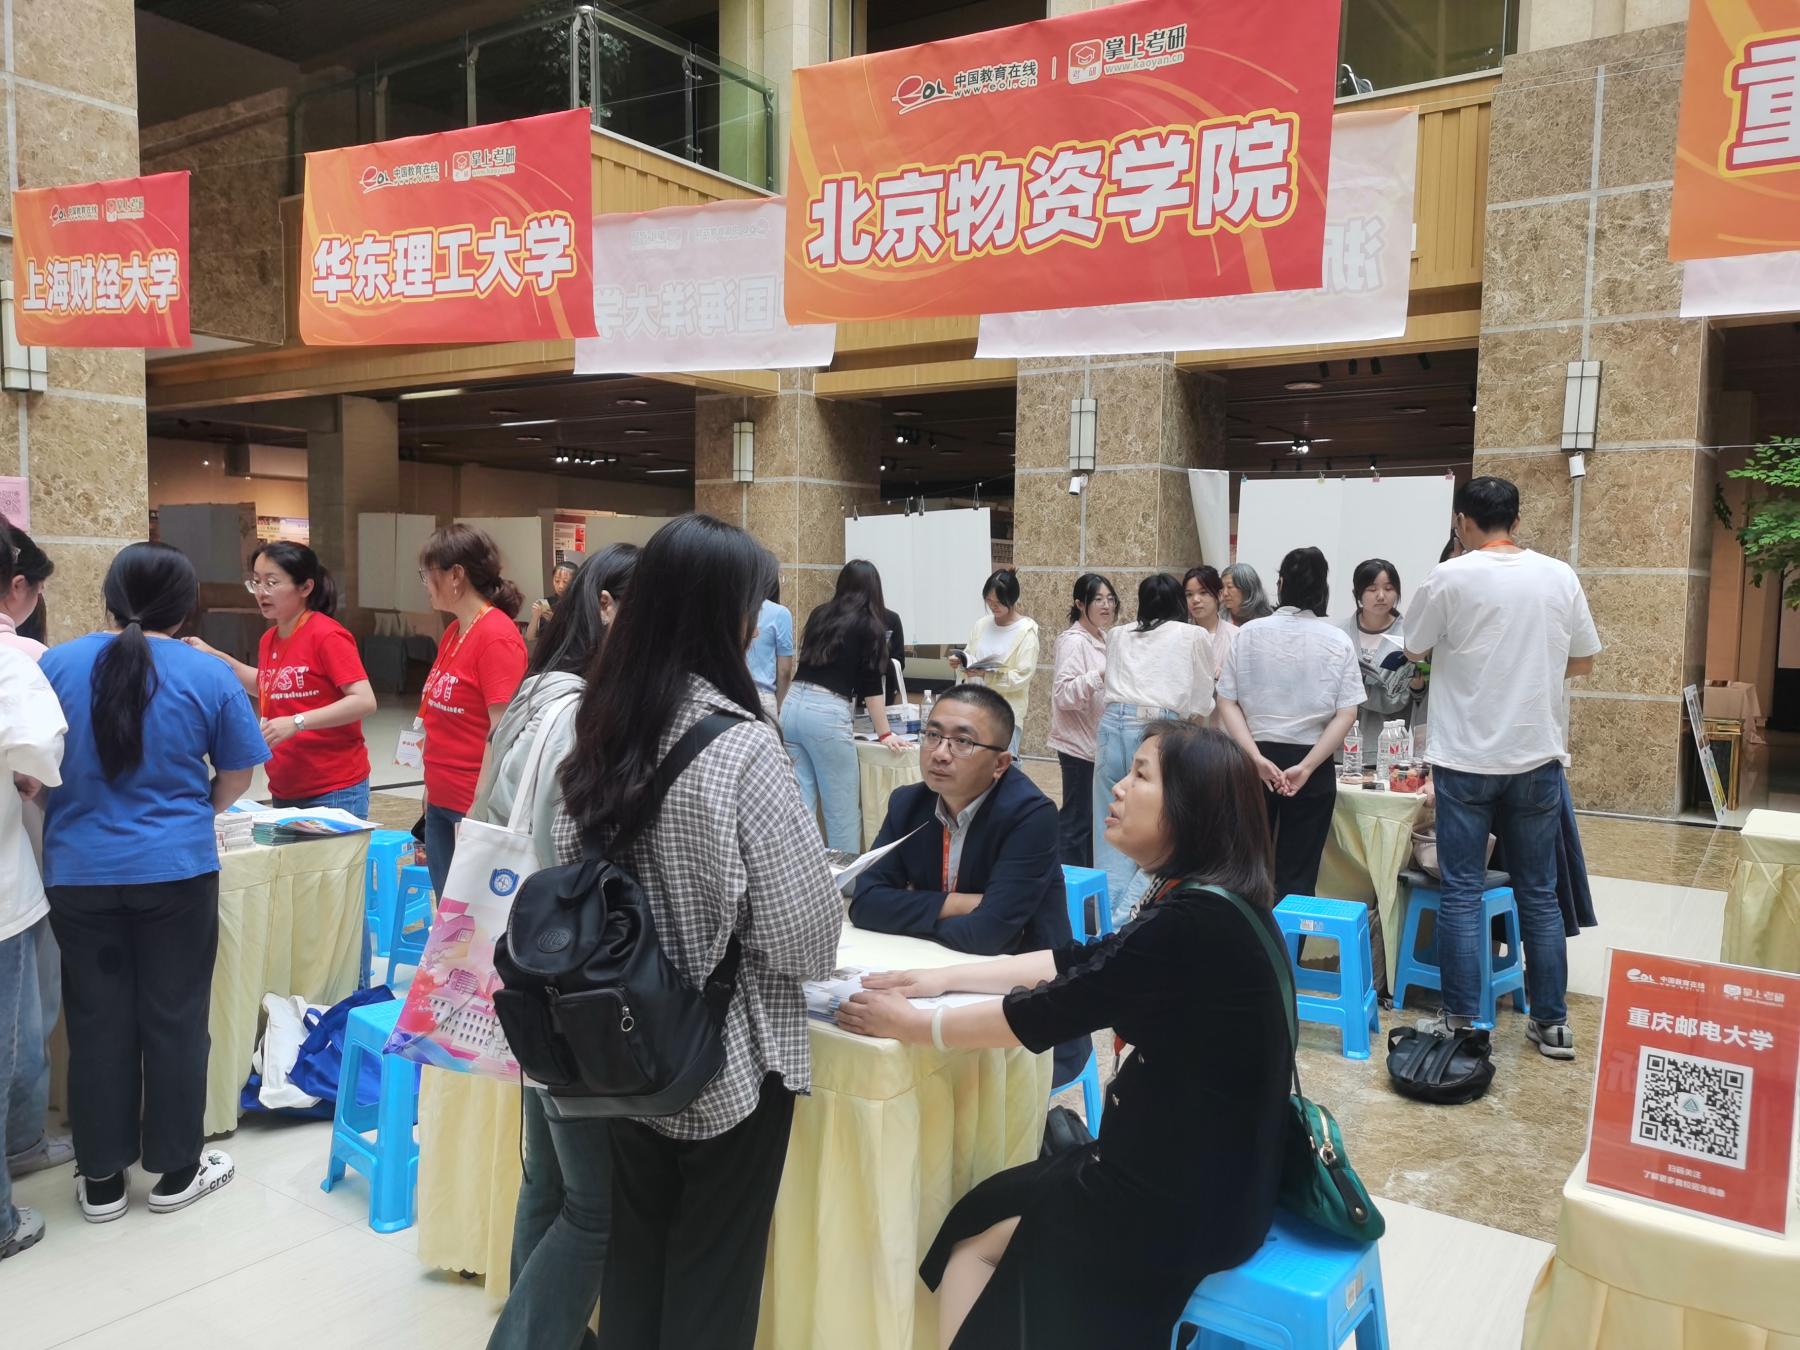 这两次的行程让研究生院走进了浙江财经大学,重庆师范大学和重庆第二